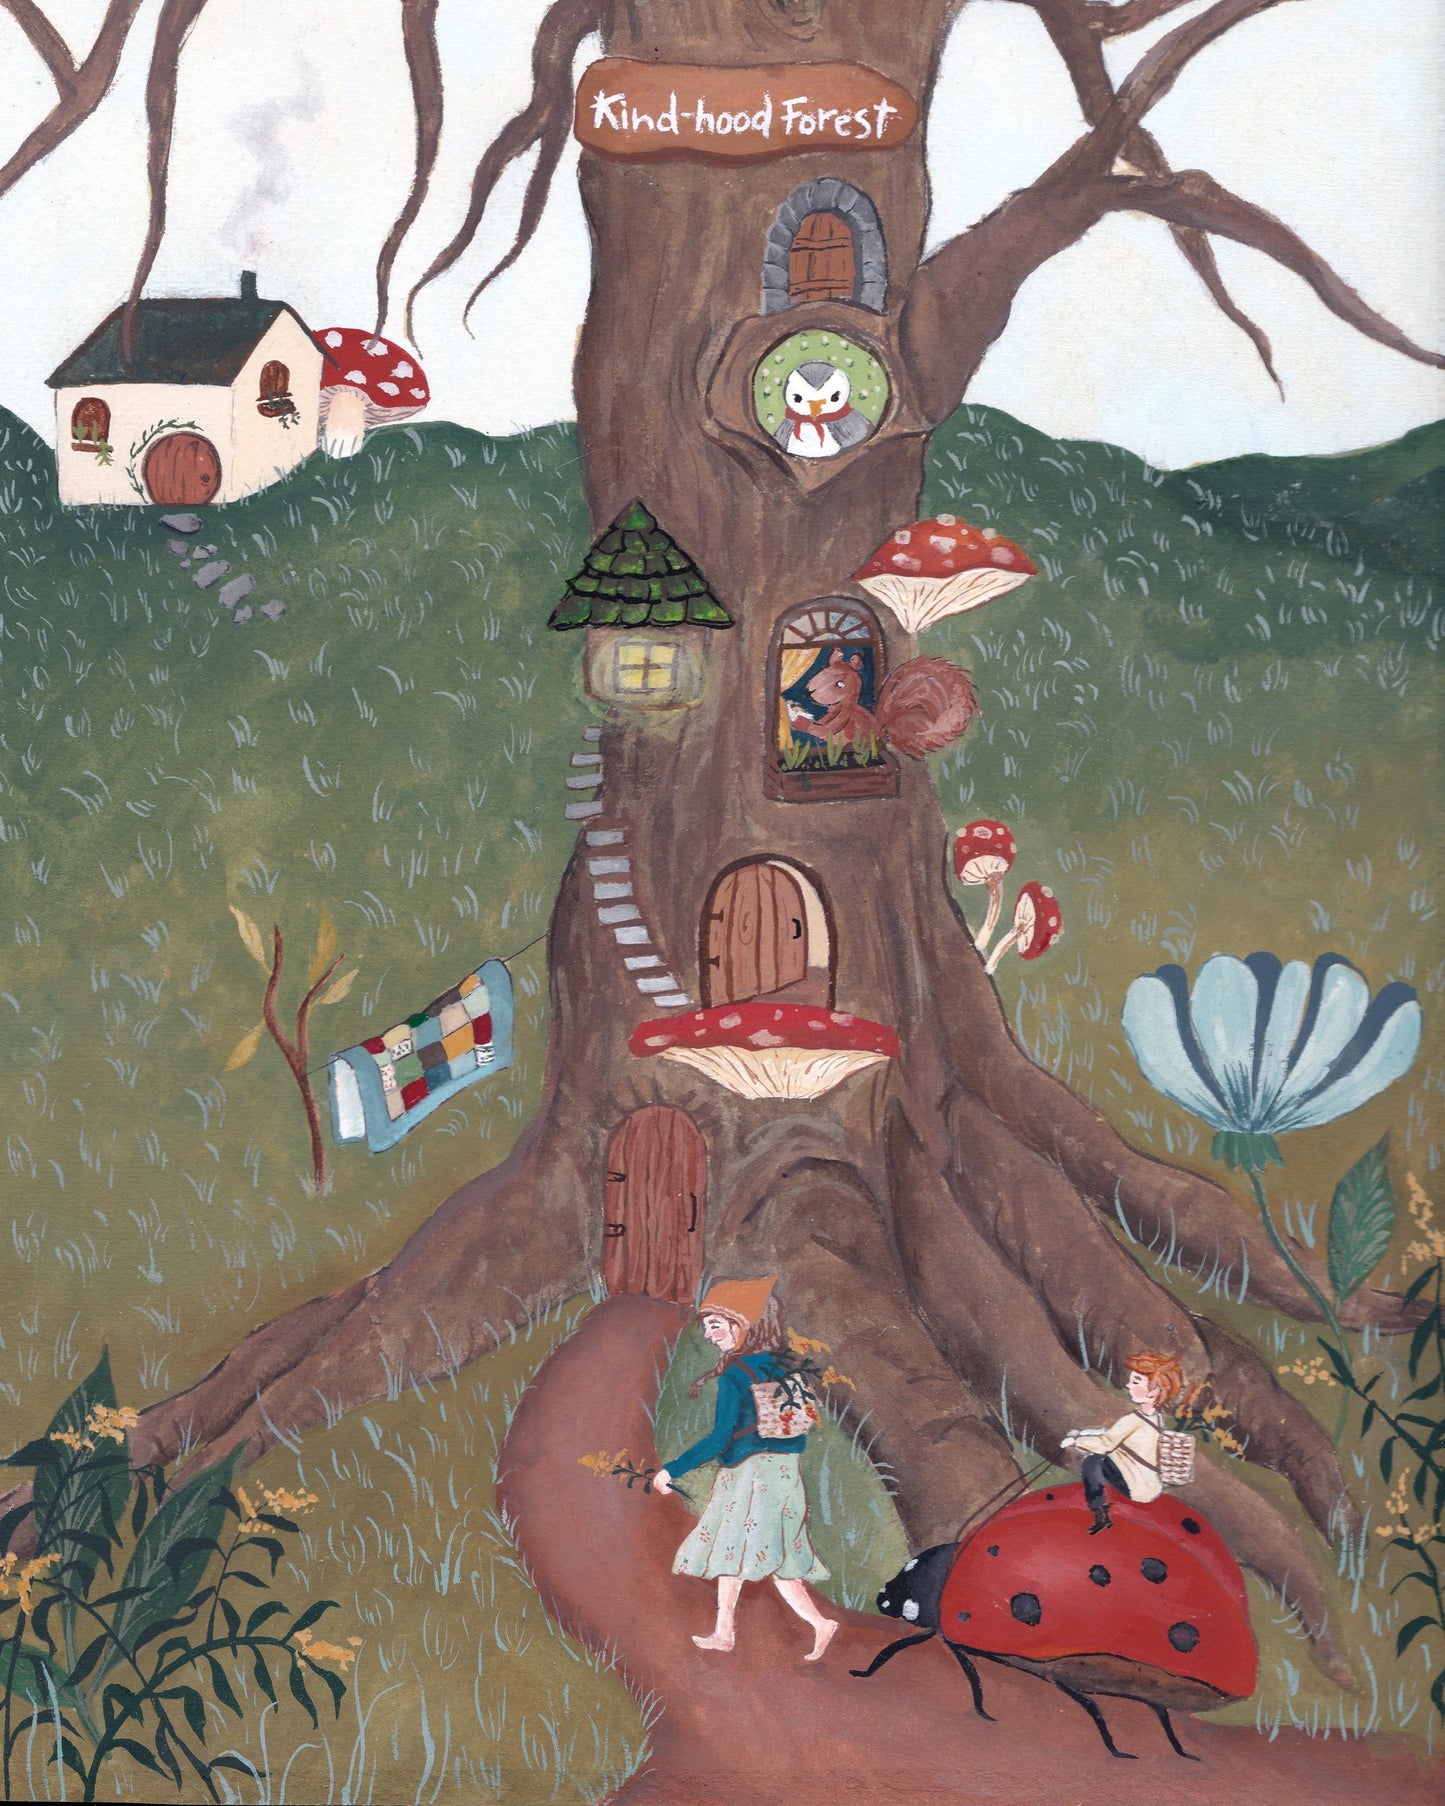 Kind-hood forest illustration